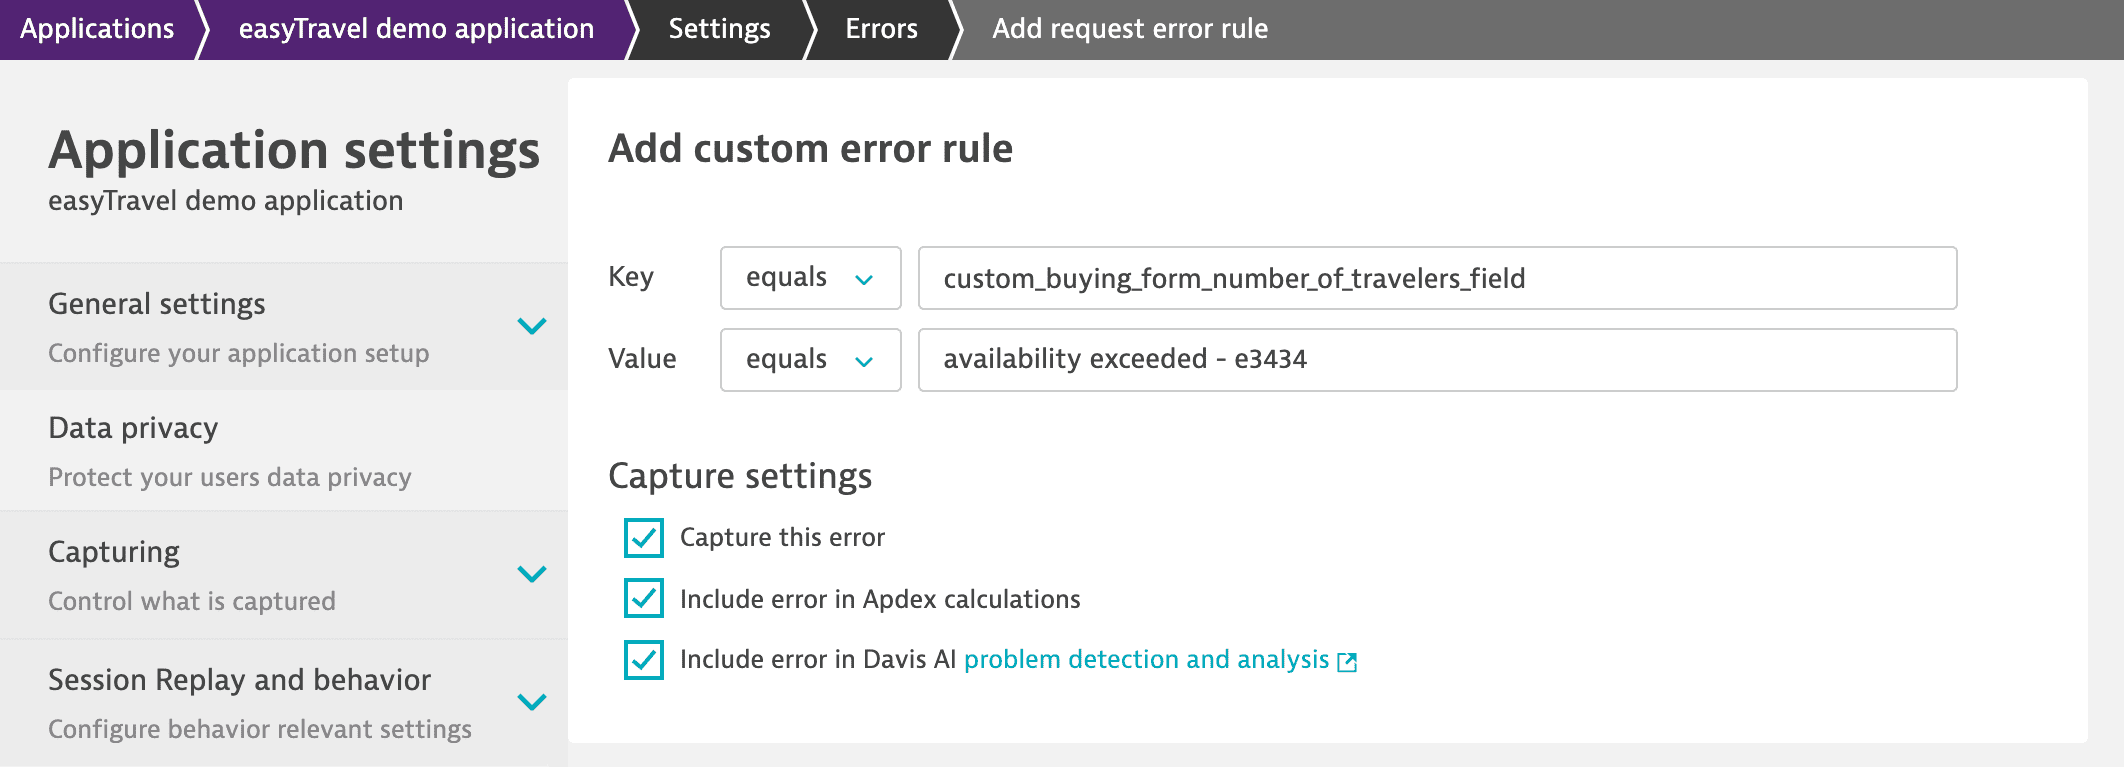 Configuring a custom error rule